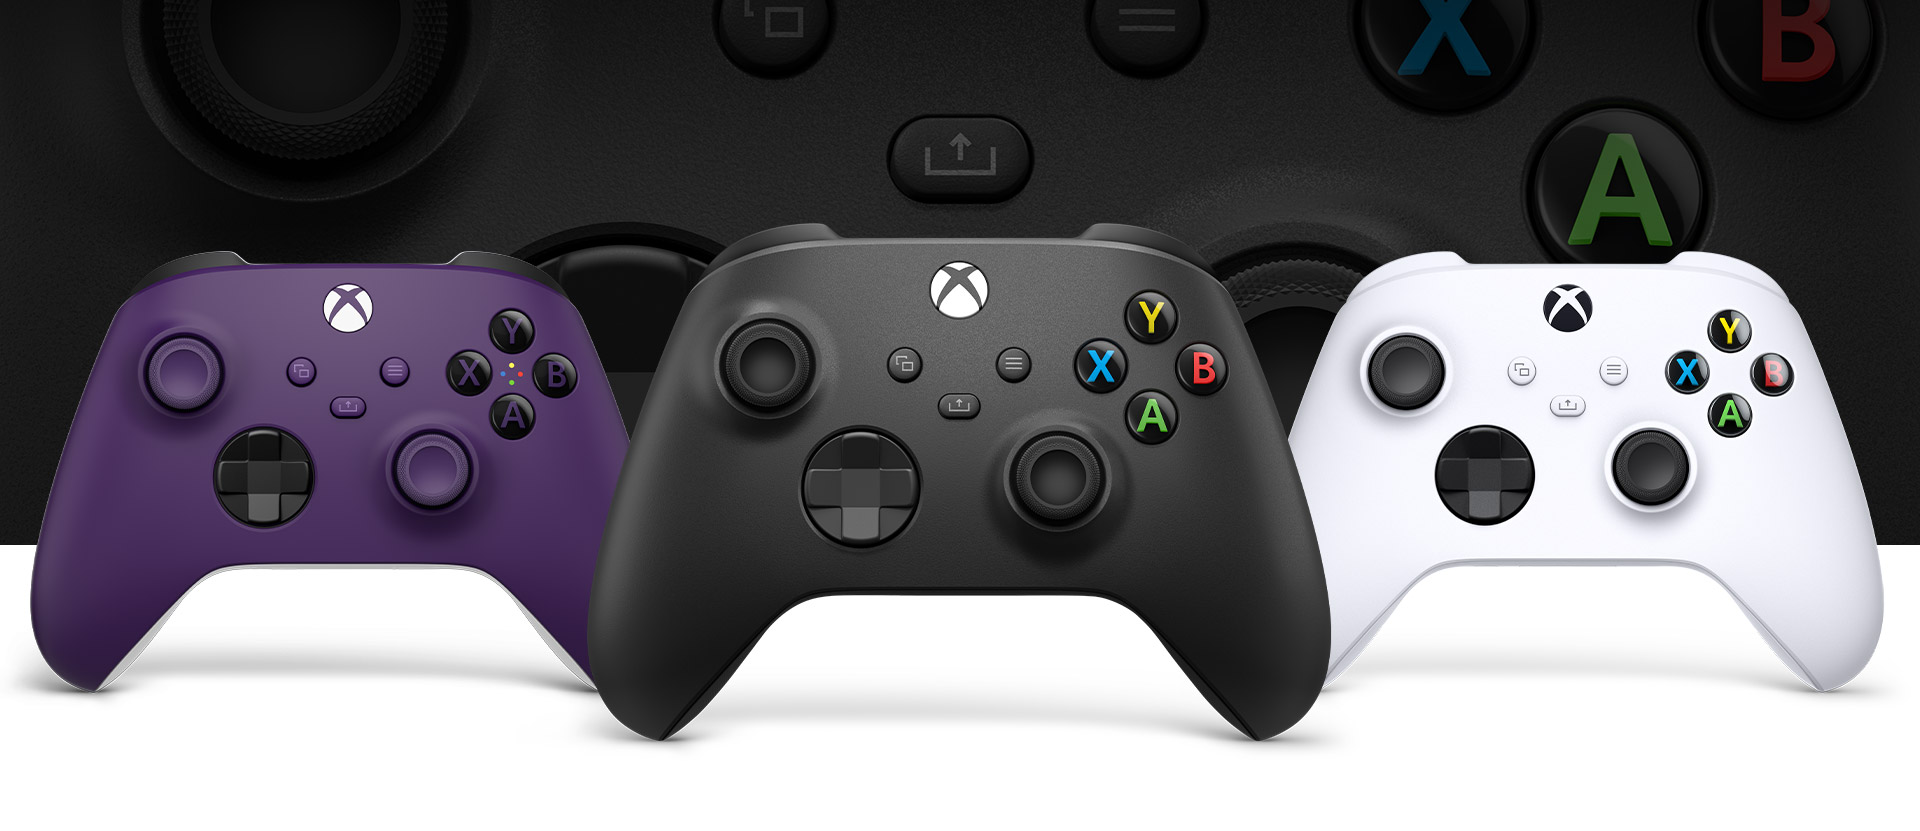 Ovládač Xbox Carbon Black v popredí, vľavo je fialový ovládač a vpravo ovládač Robot White